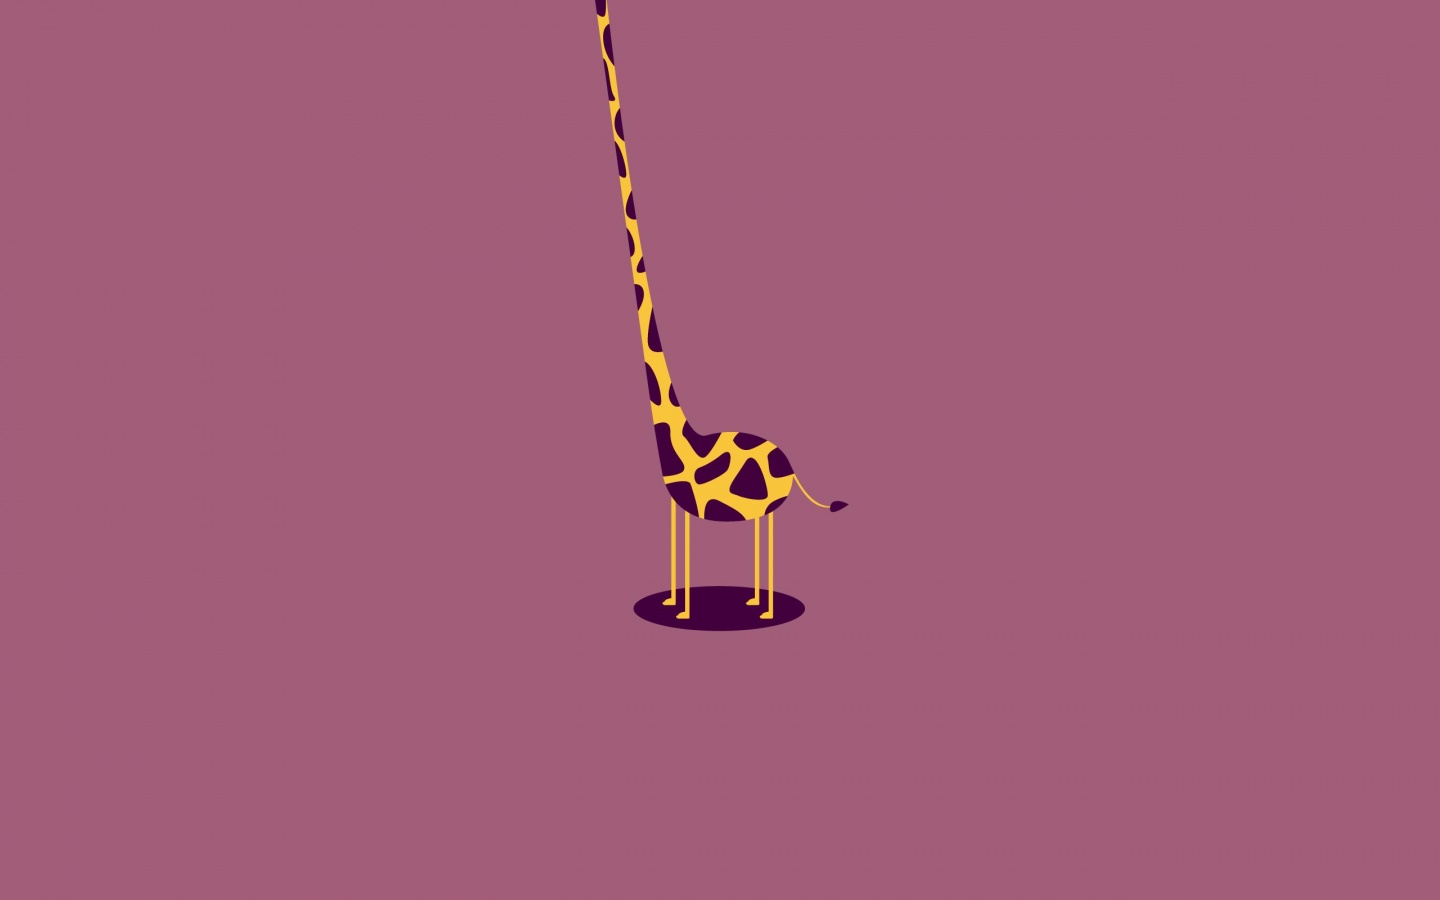 Giraffe Vector Art Wallpapers - 1440x900 - 87990